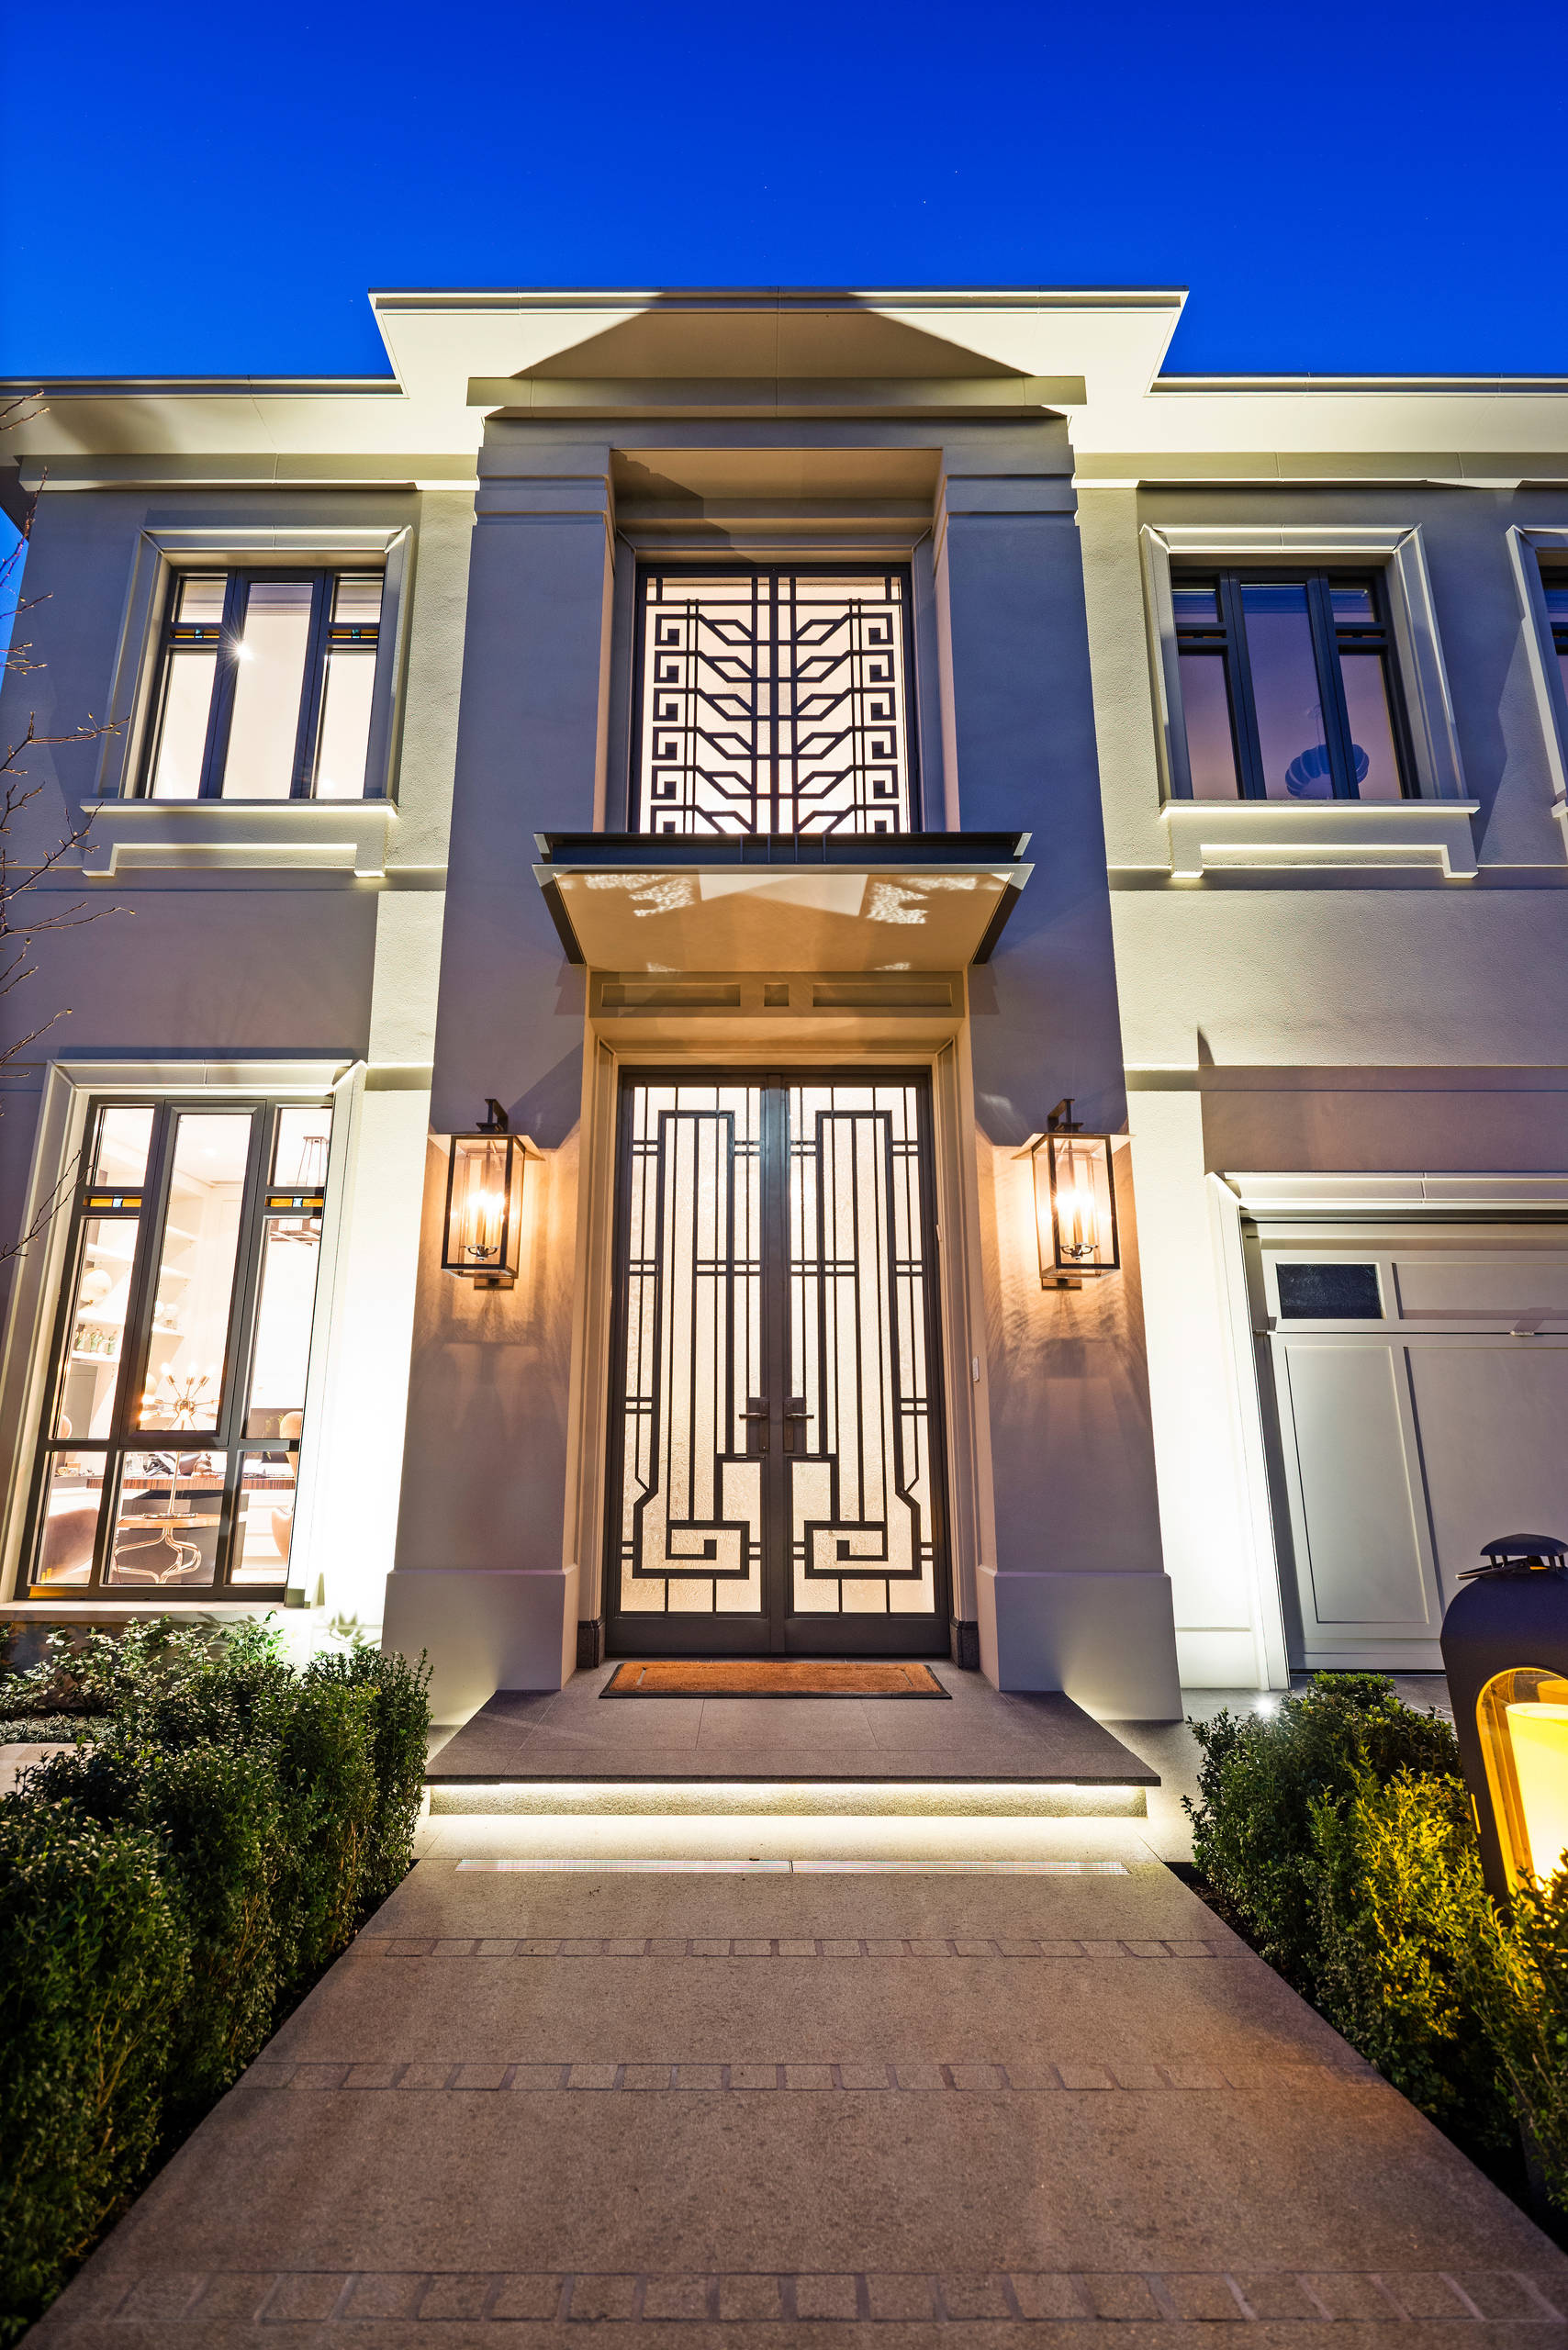 75 Beautiful Art Deco House Home Design Ideas & Designs | Houzz Au